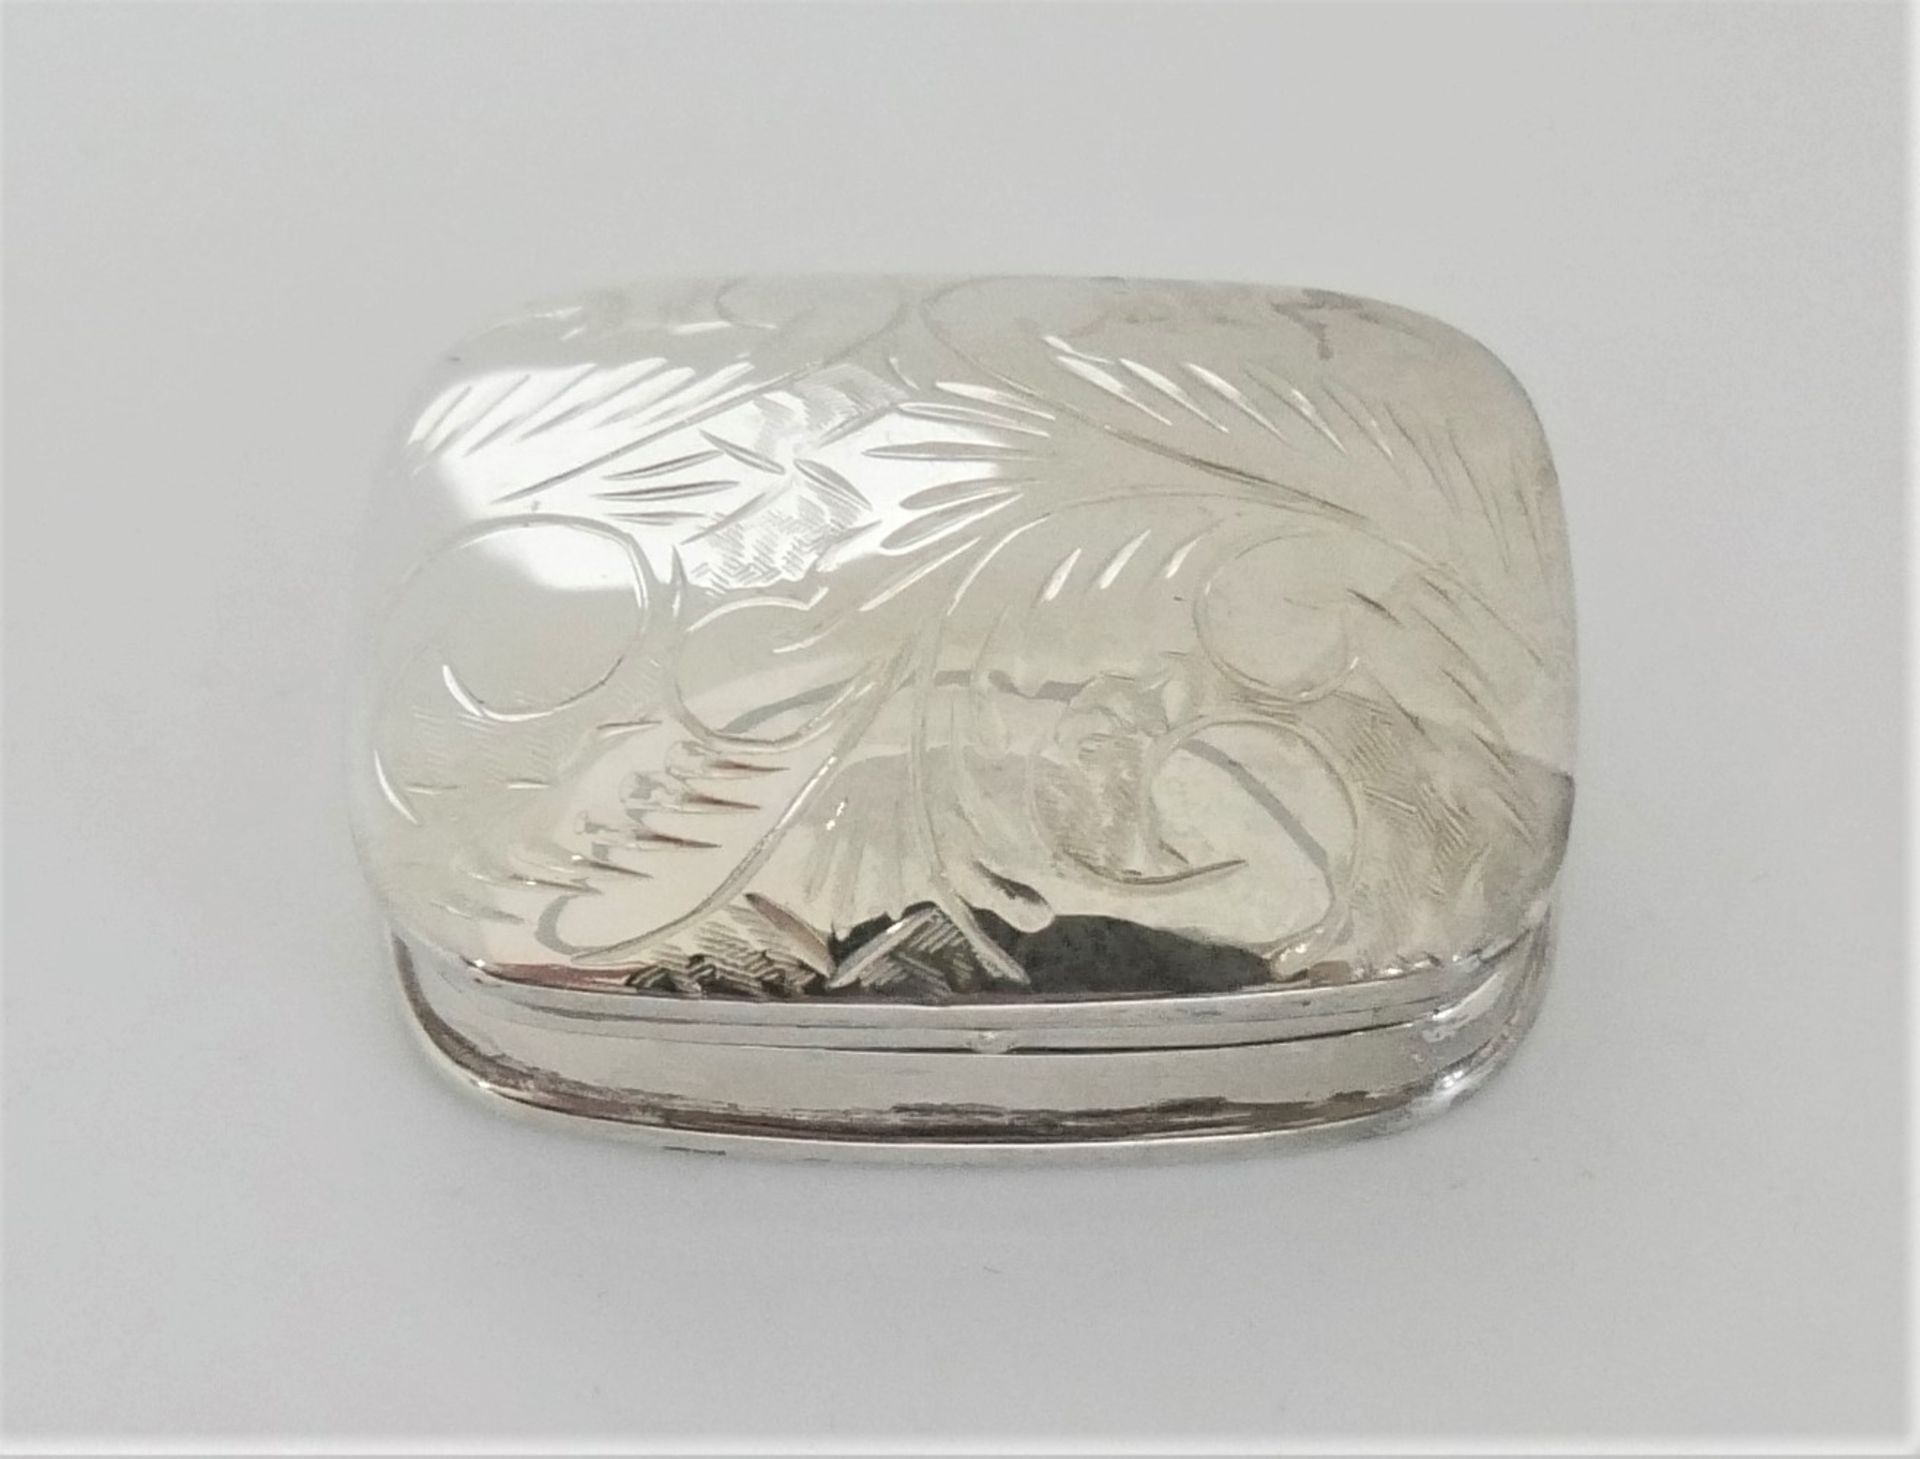 Kleine Pillendose mit floralem Design, gepunzt 925er Silber.